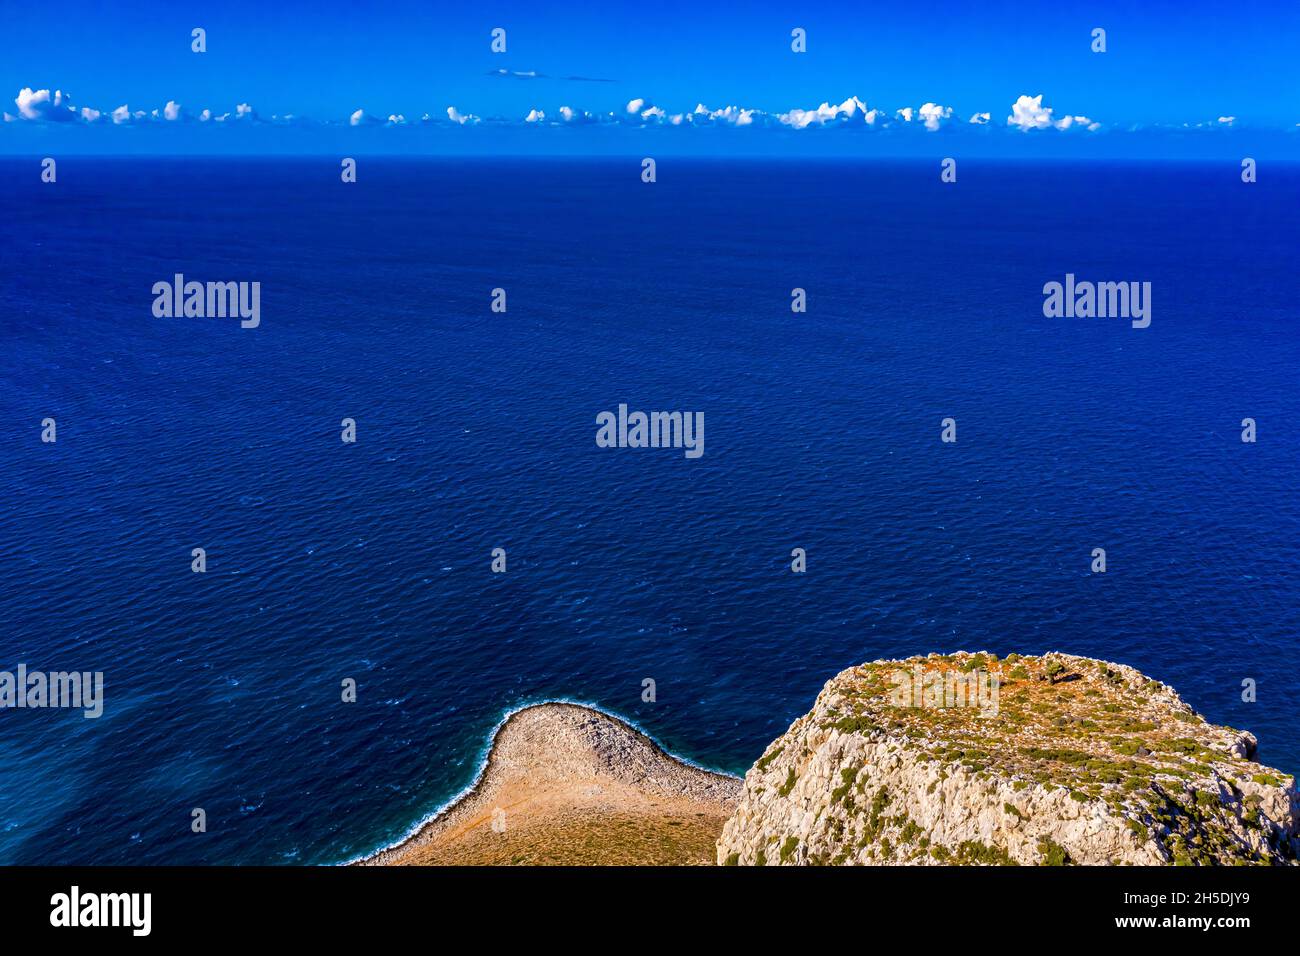 Kreta aus der Luft | Schöne Landschaften auf Kreta von oben gefilmt | Creta dall'alto con drone Foto Stock